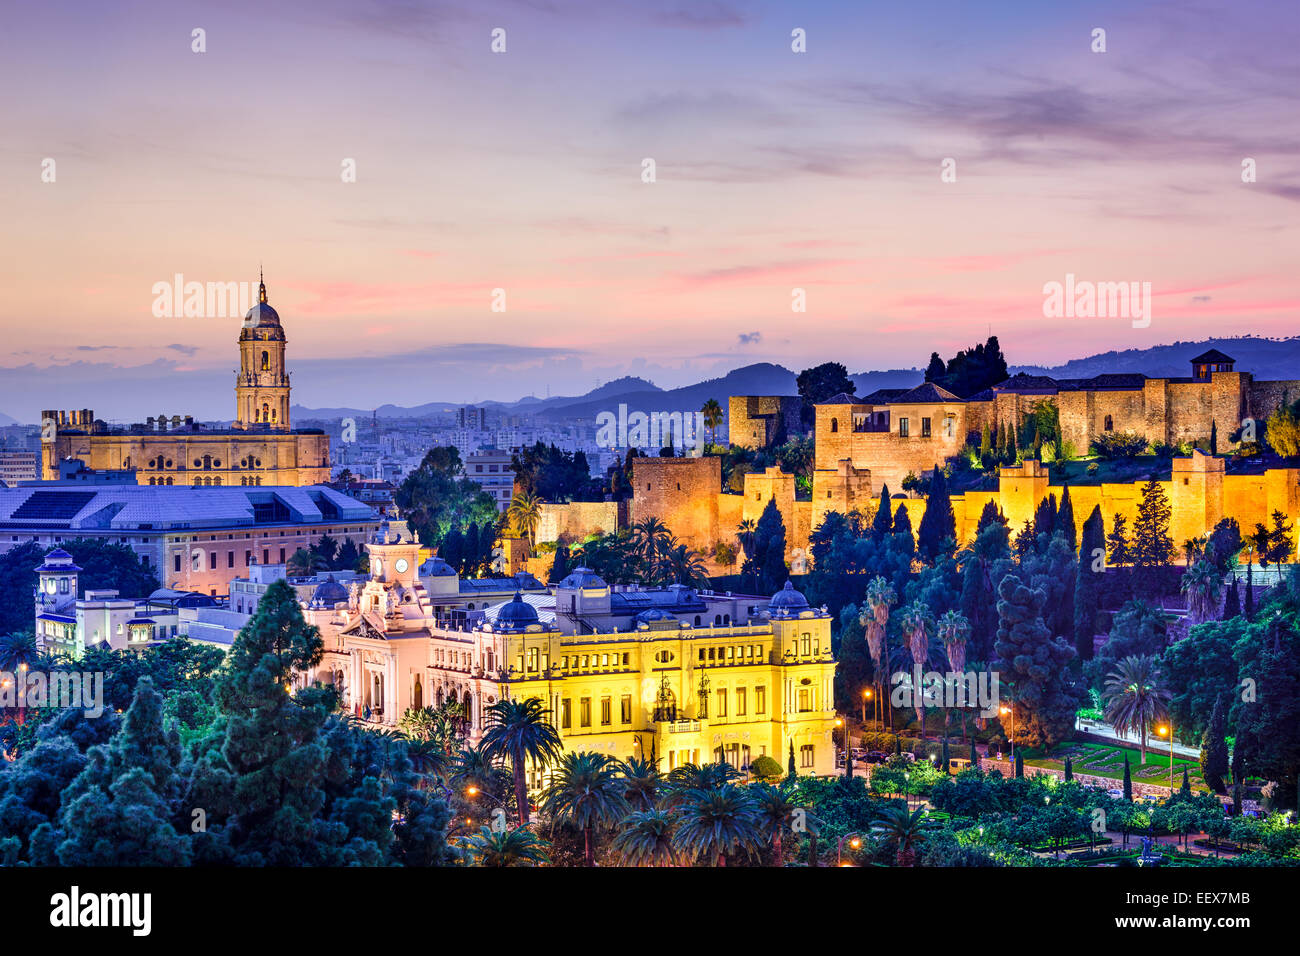 Malaga, Spanien Stadtbild an der Kathedrale, Rathaus und Alcazaba Zitadelle von Malaga. Stockfoto